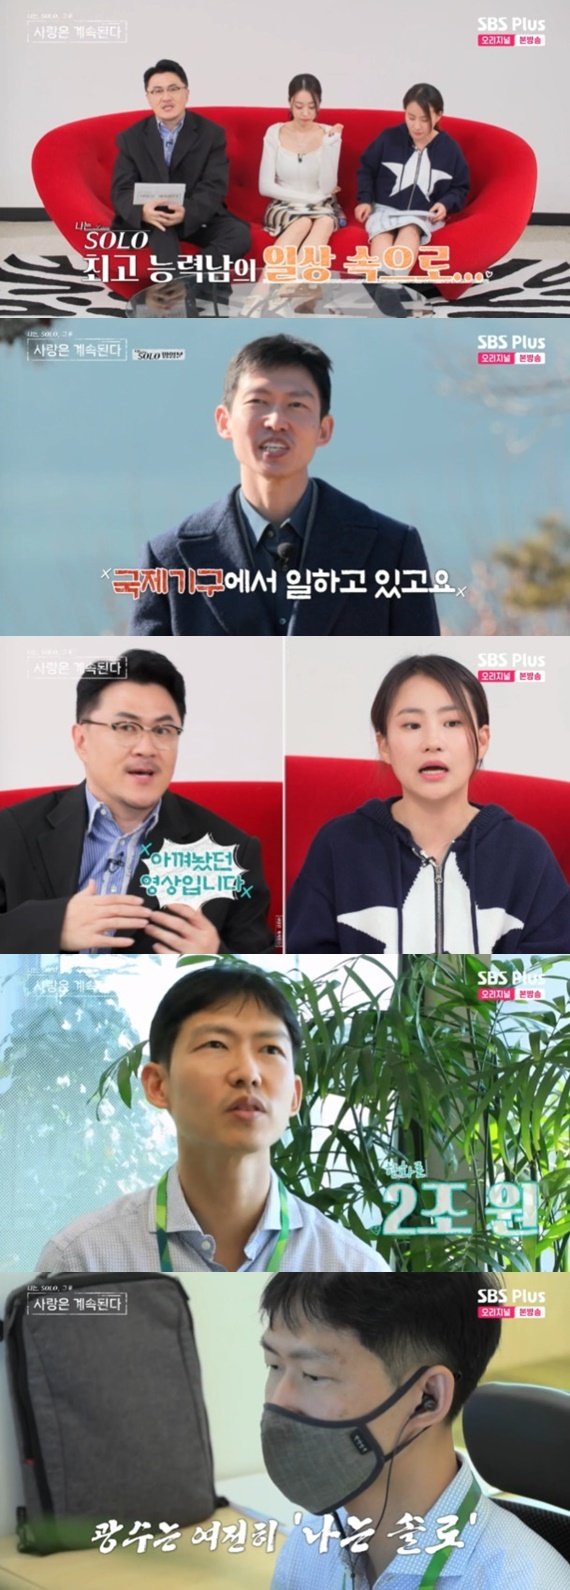 7기 광수, 여전히 솔로인 근황 공개…'나는 솔로' 최고 능력남